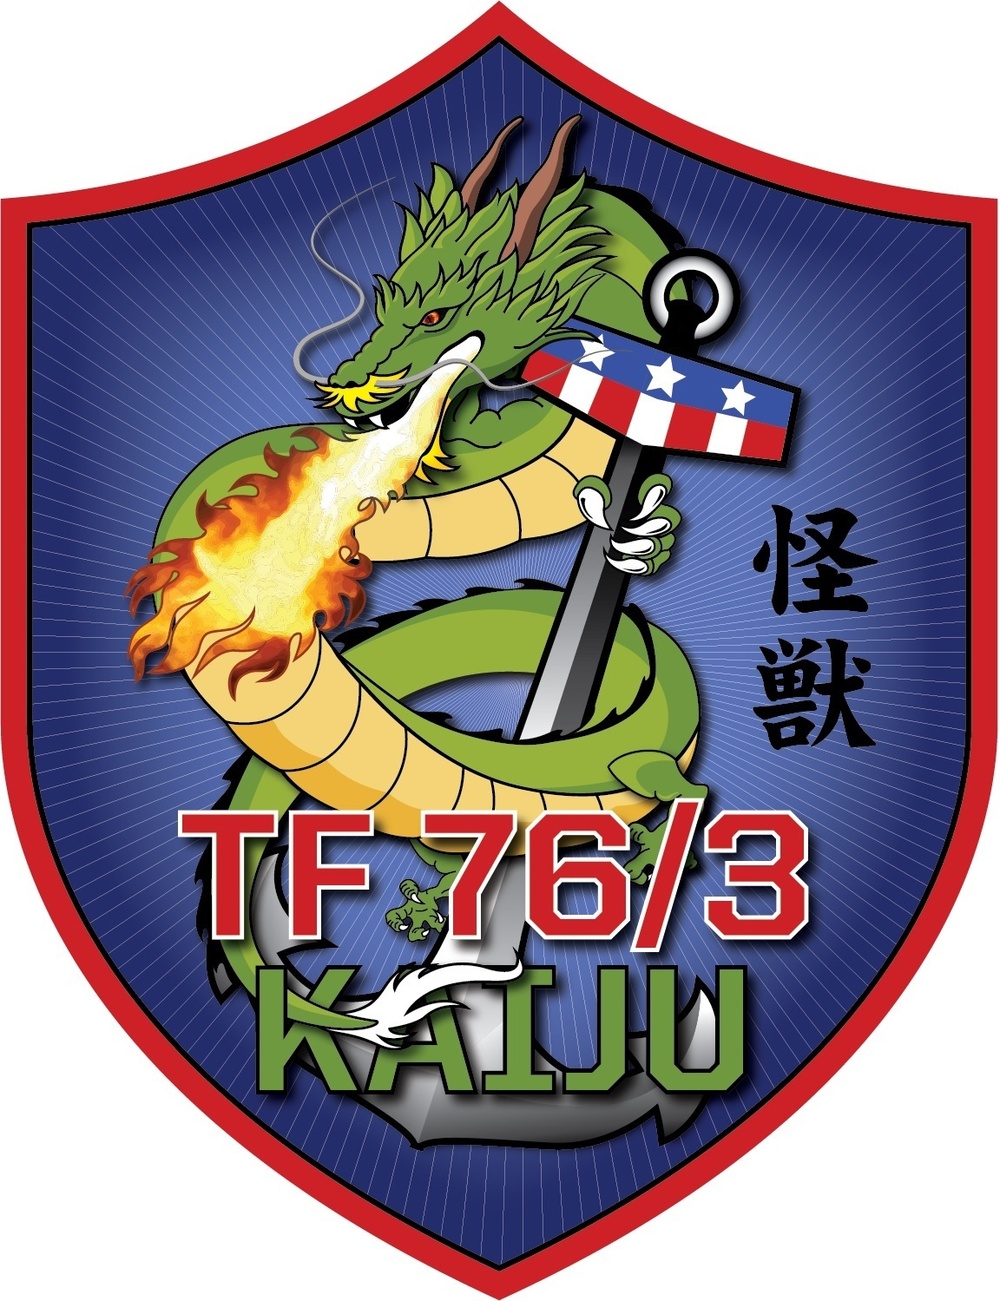 CTF 76/3 Kaiju Insignia